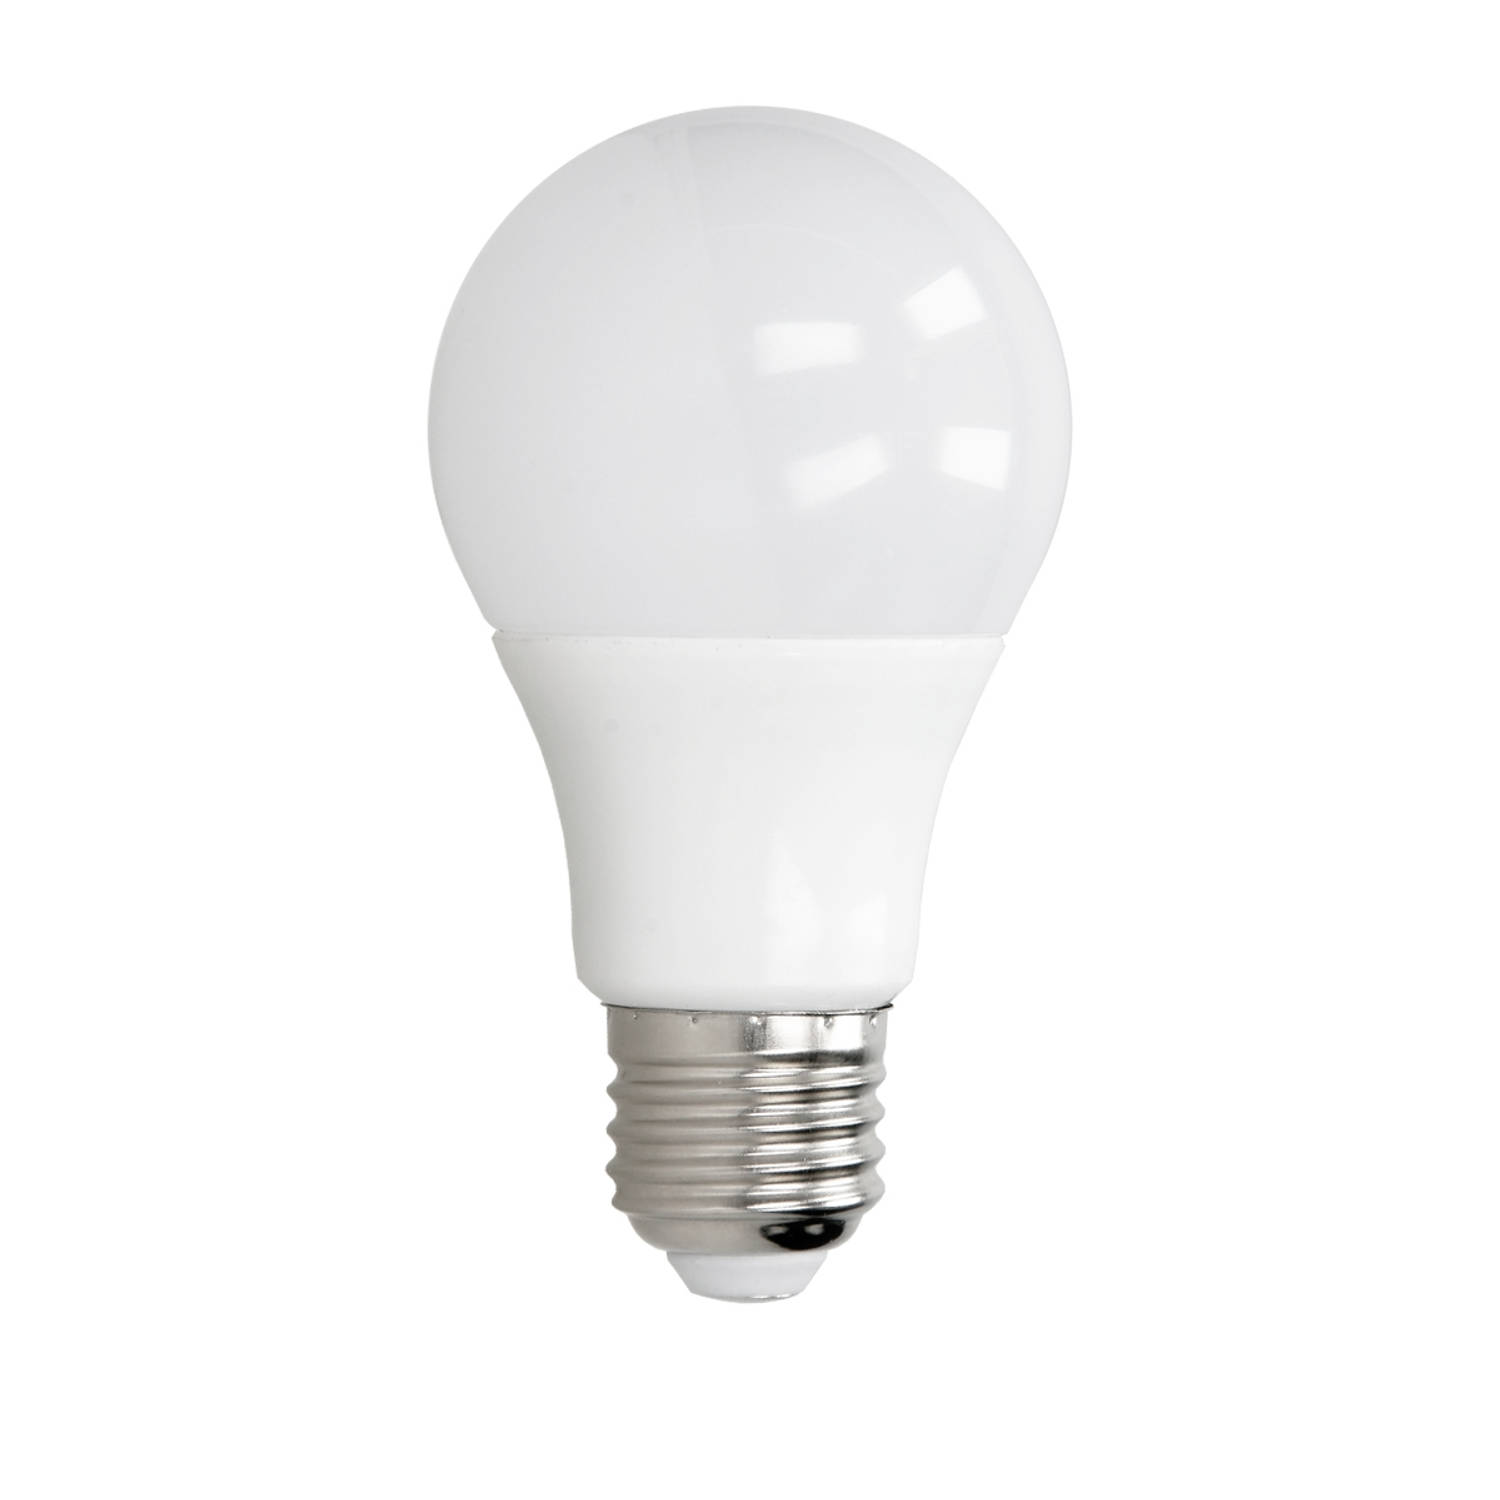 LED-lamp E27 7 Watt koel wit